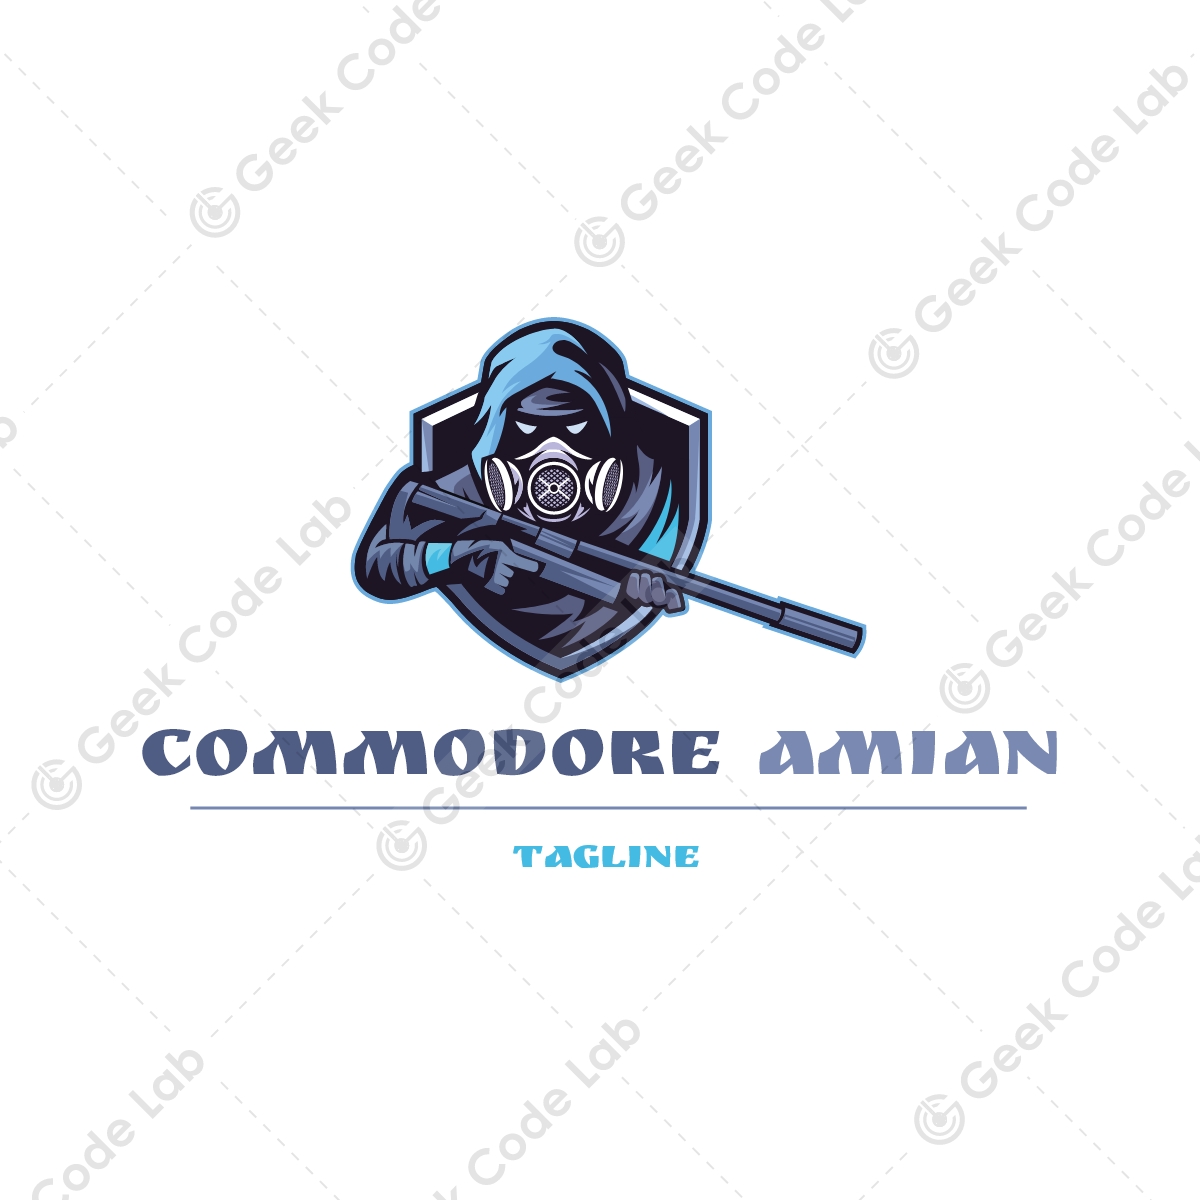 Commodore Amian